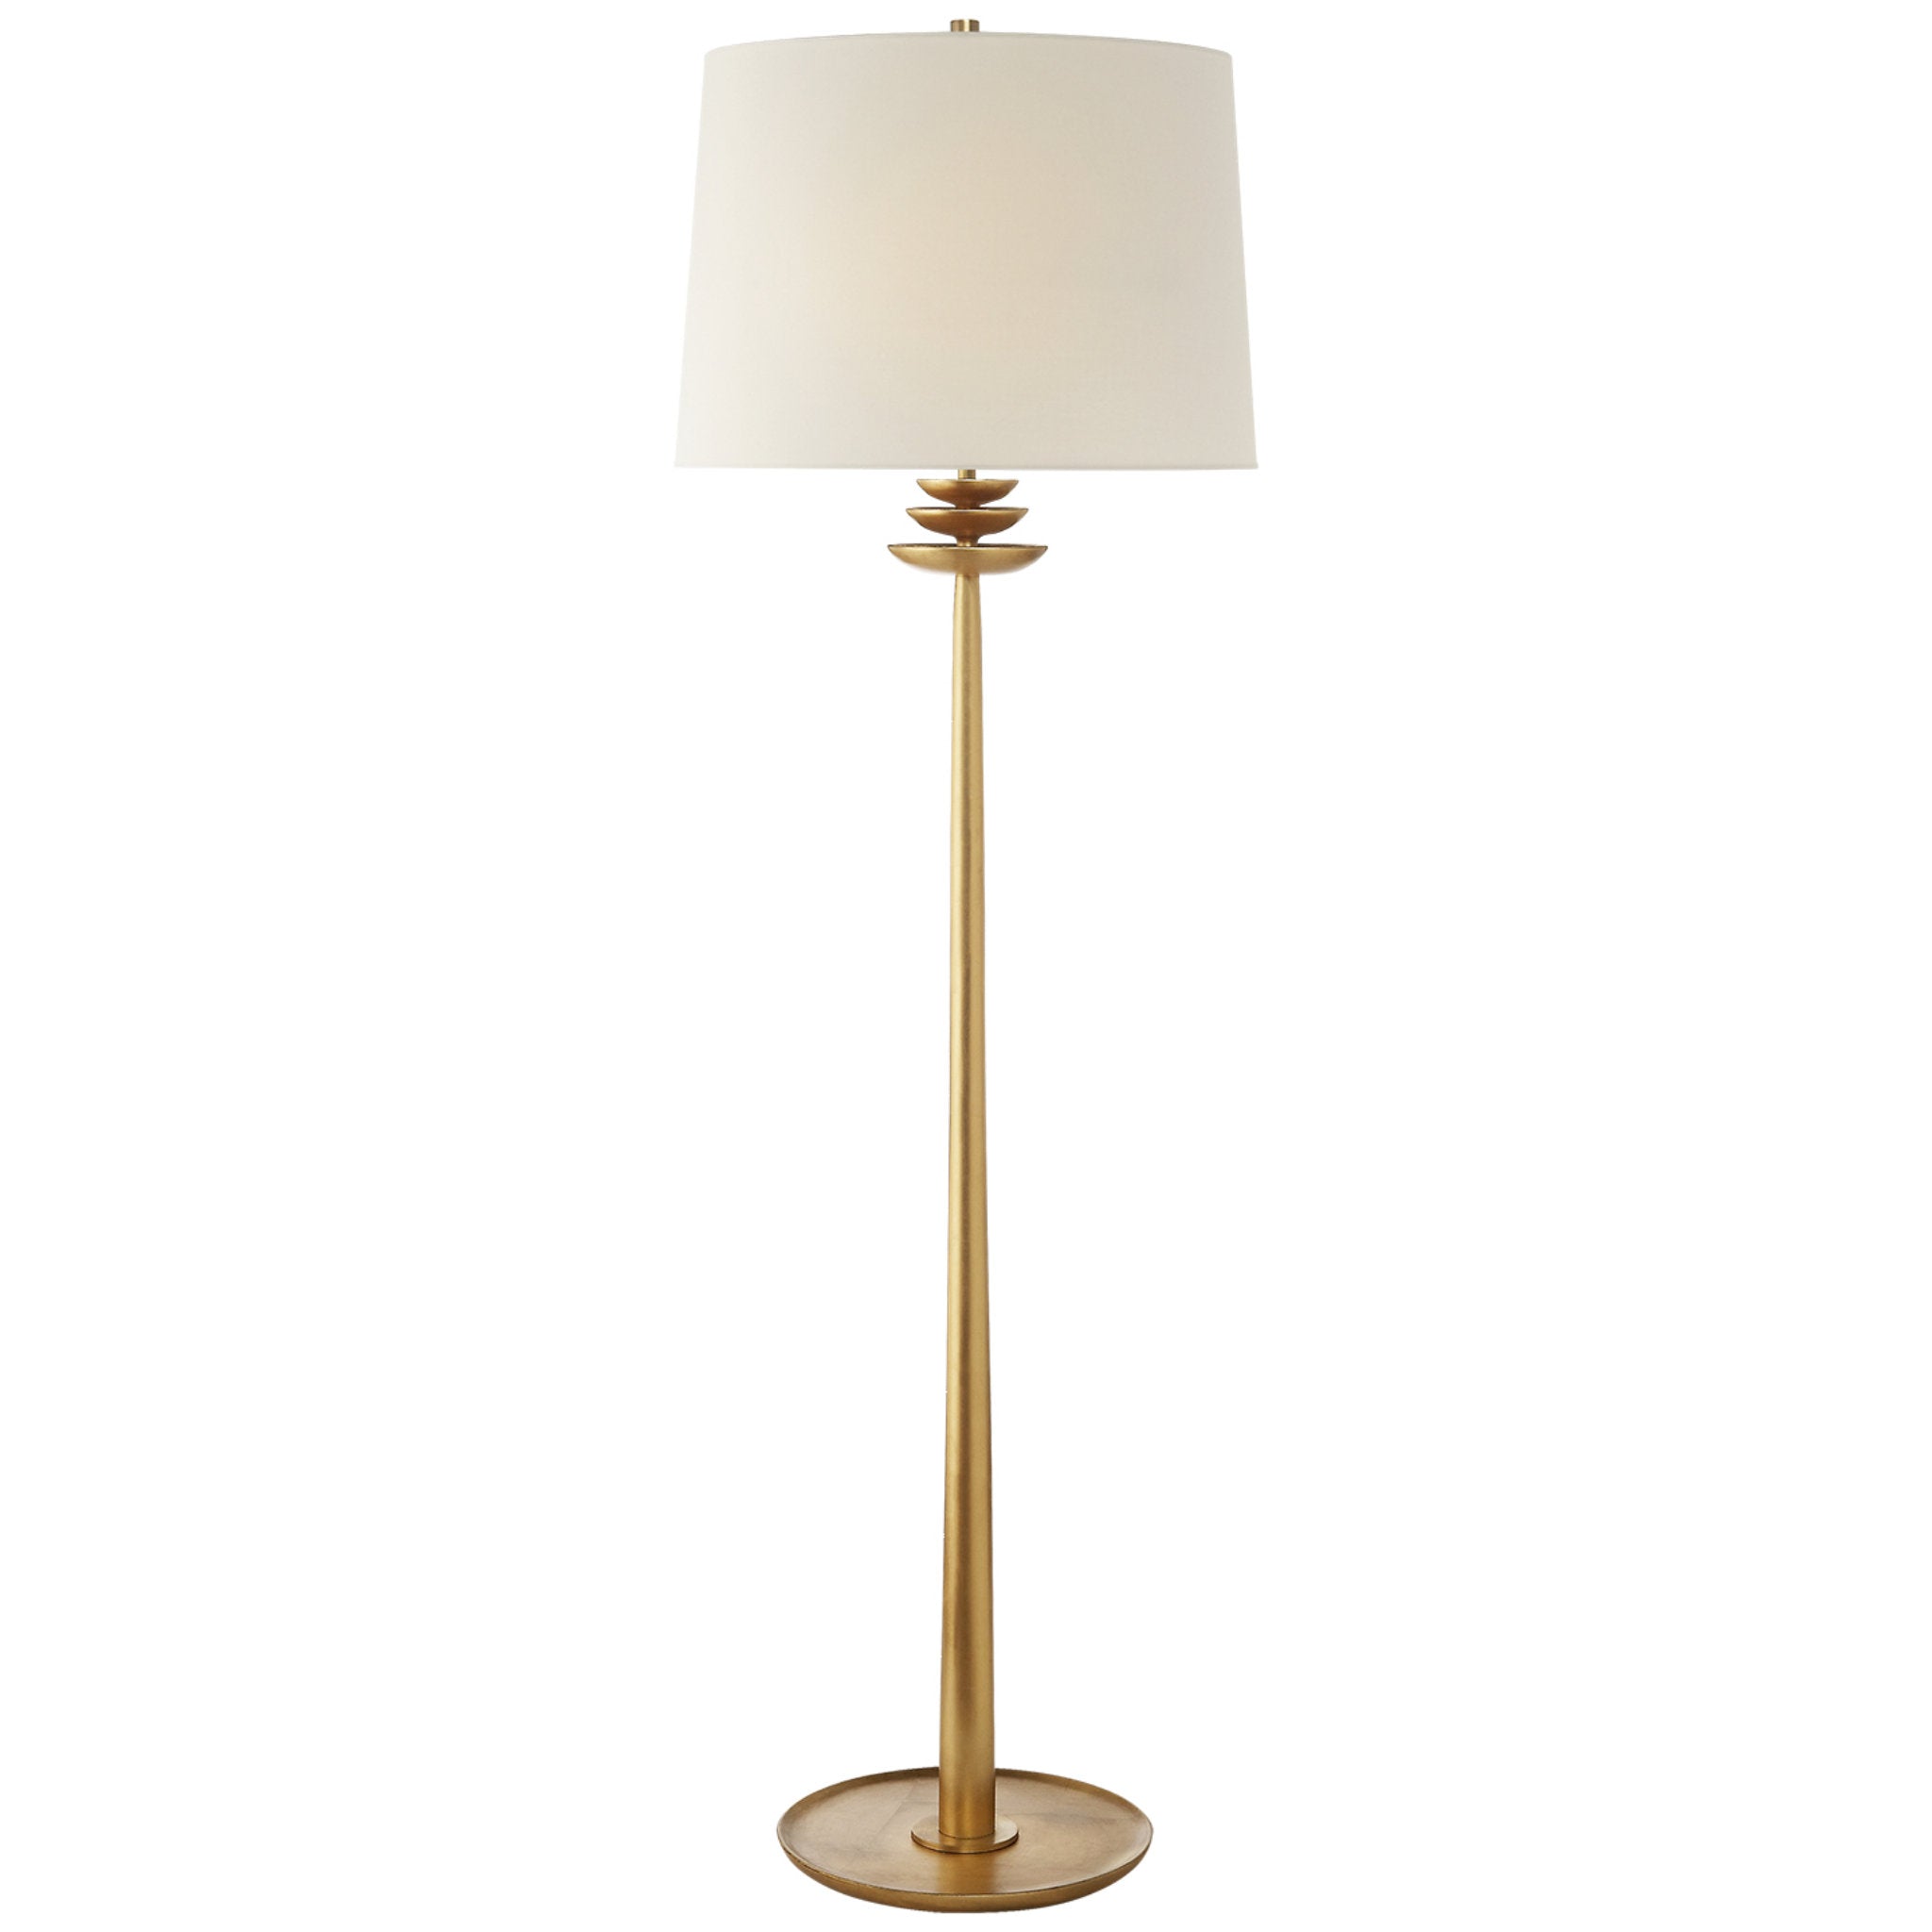 AERIN Beaumont Floor Lamp in Gild with Linen Shade